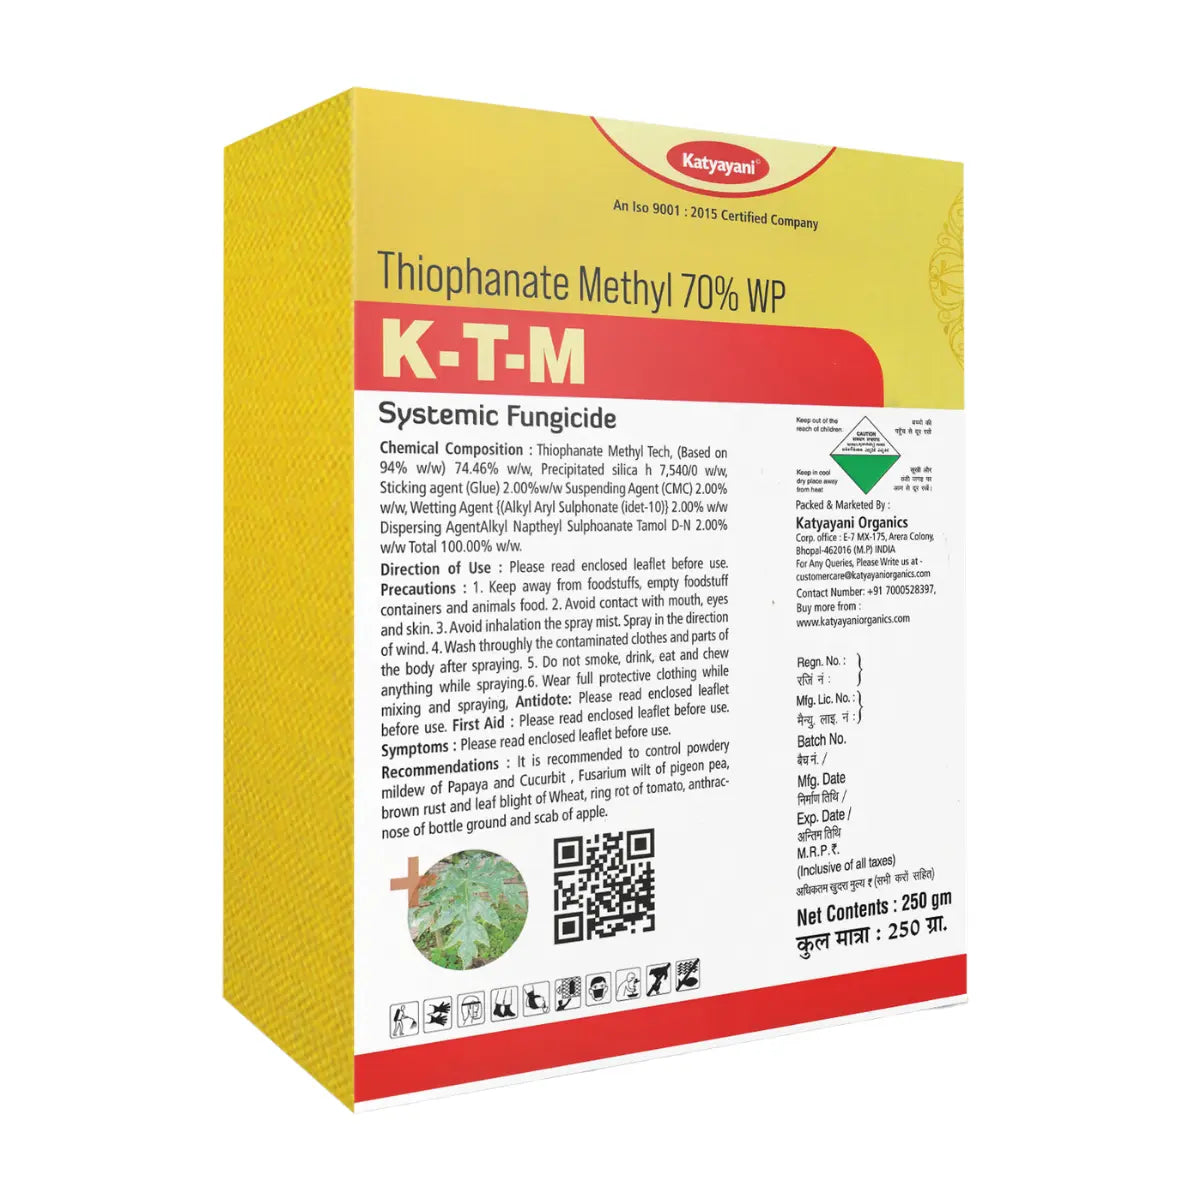 कात्यायनी KTM | थियोफैनेट मिथाइल 70% WP | रासायनिक फफूंदनाशी